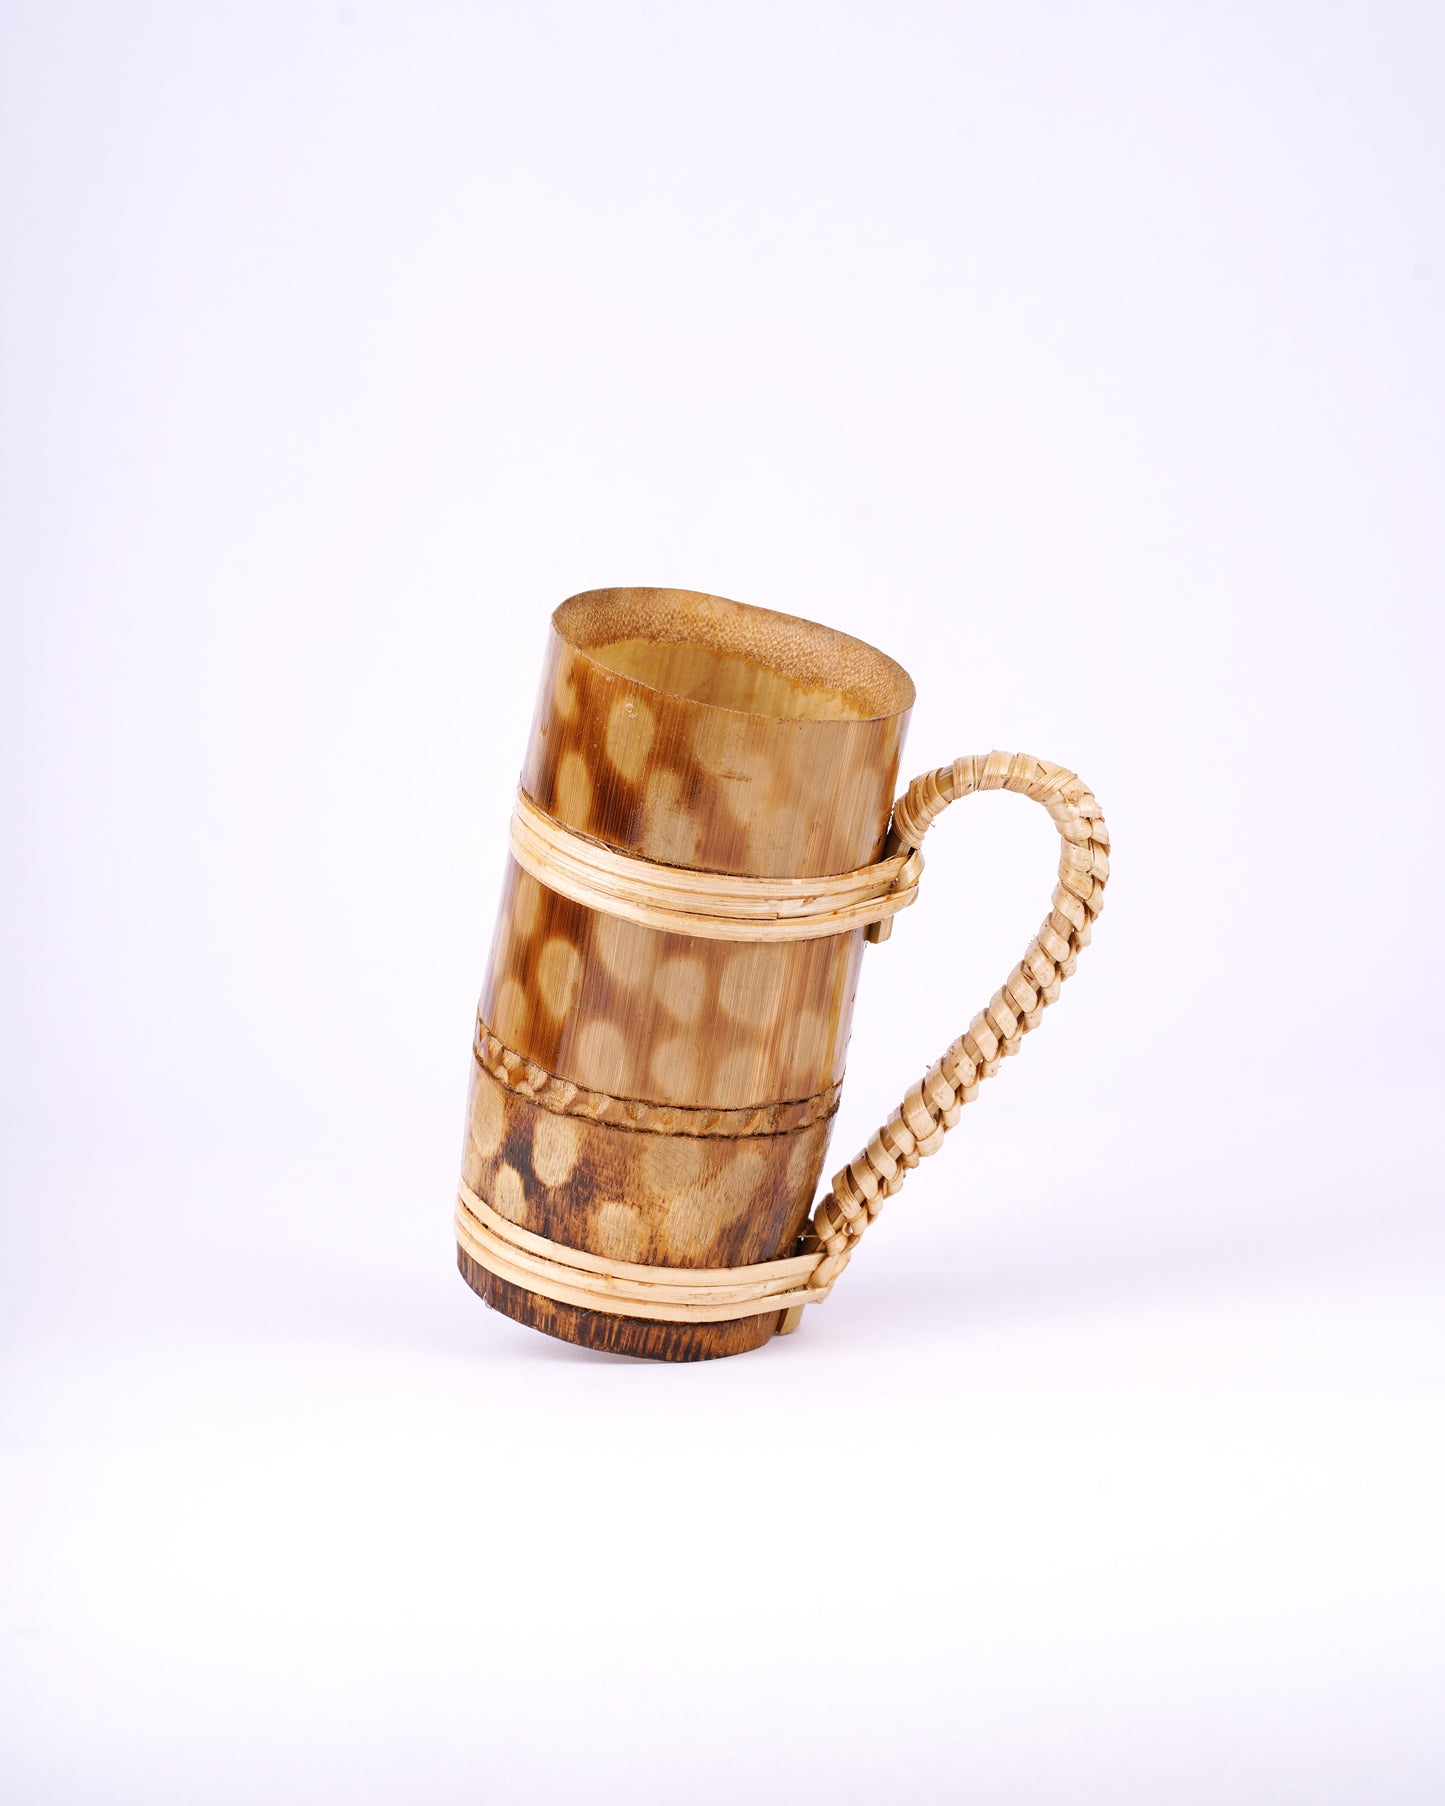 Bamboo Beer Mug (set of 3)